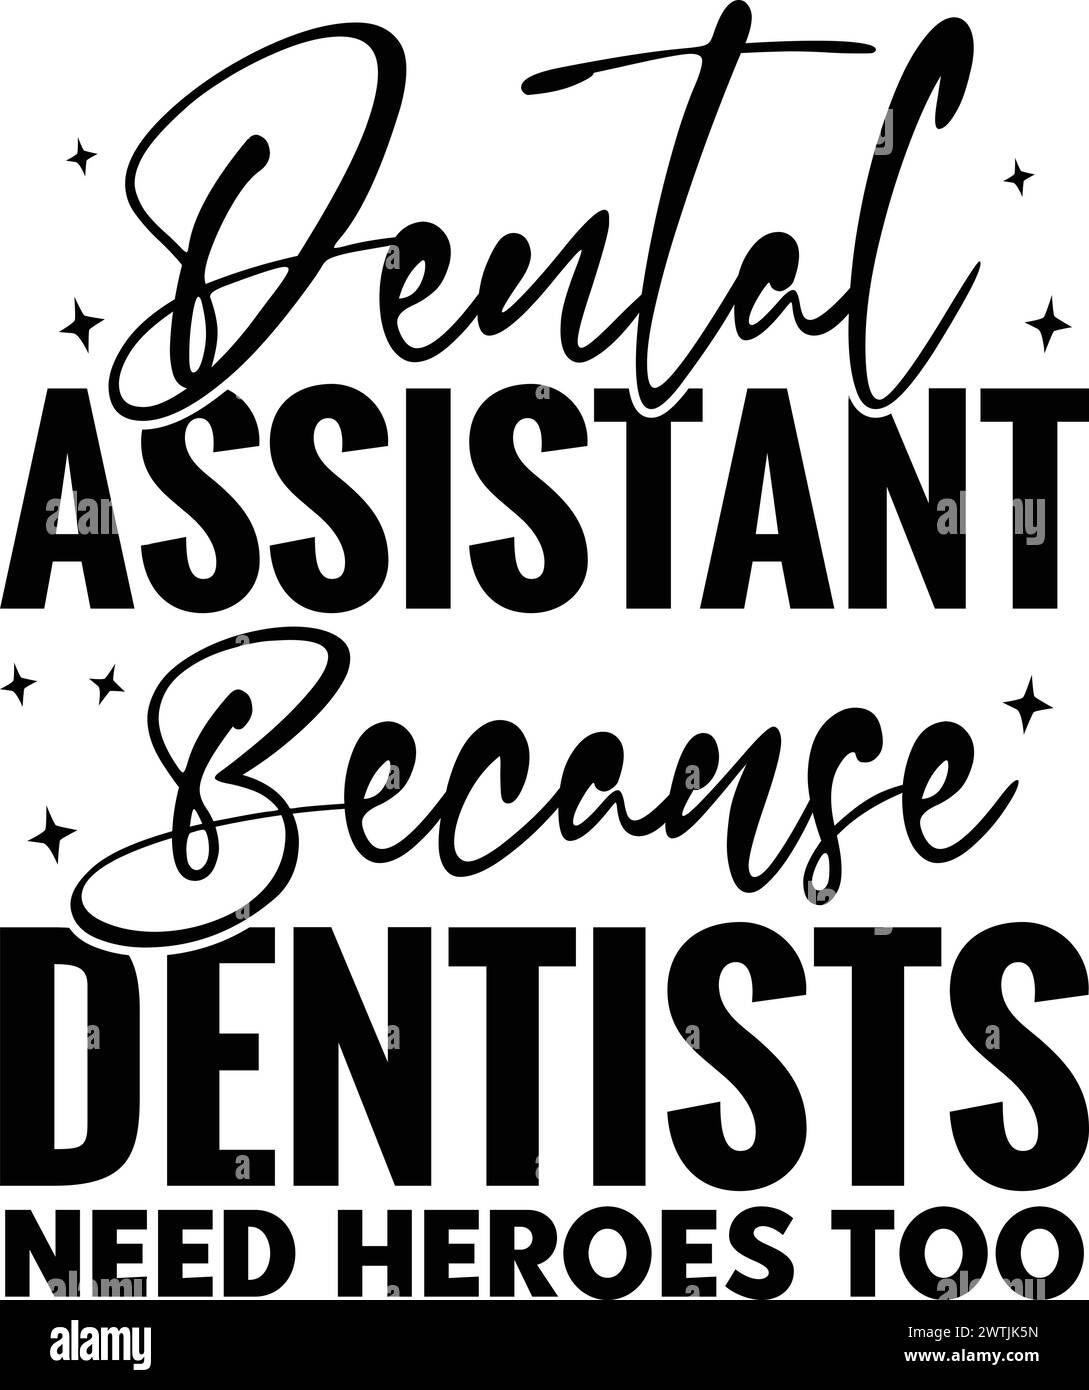 Assistant dentaire parce que les dentistes ont besoin de héros aussi, T-shirt dentiste , T-shirt imprimé , conception vectorielle , chemise drôle Illustration de Vecteur